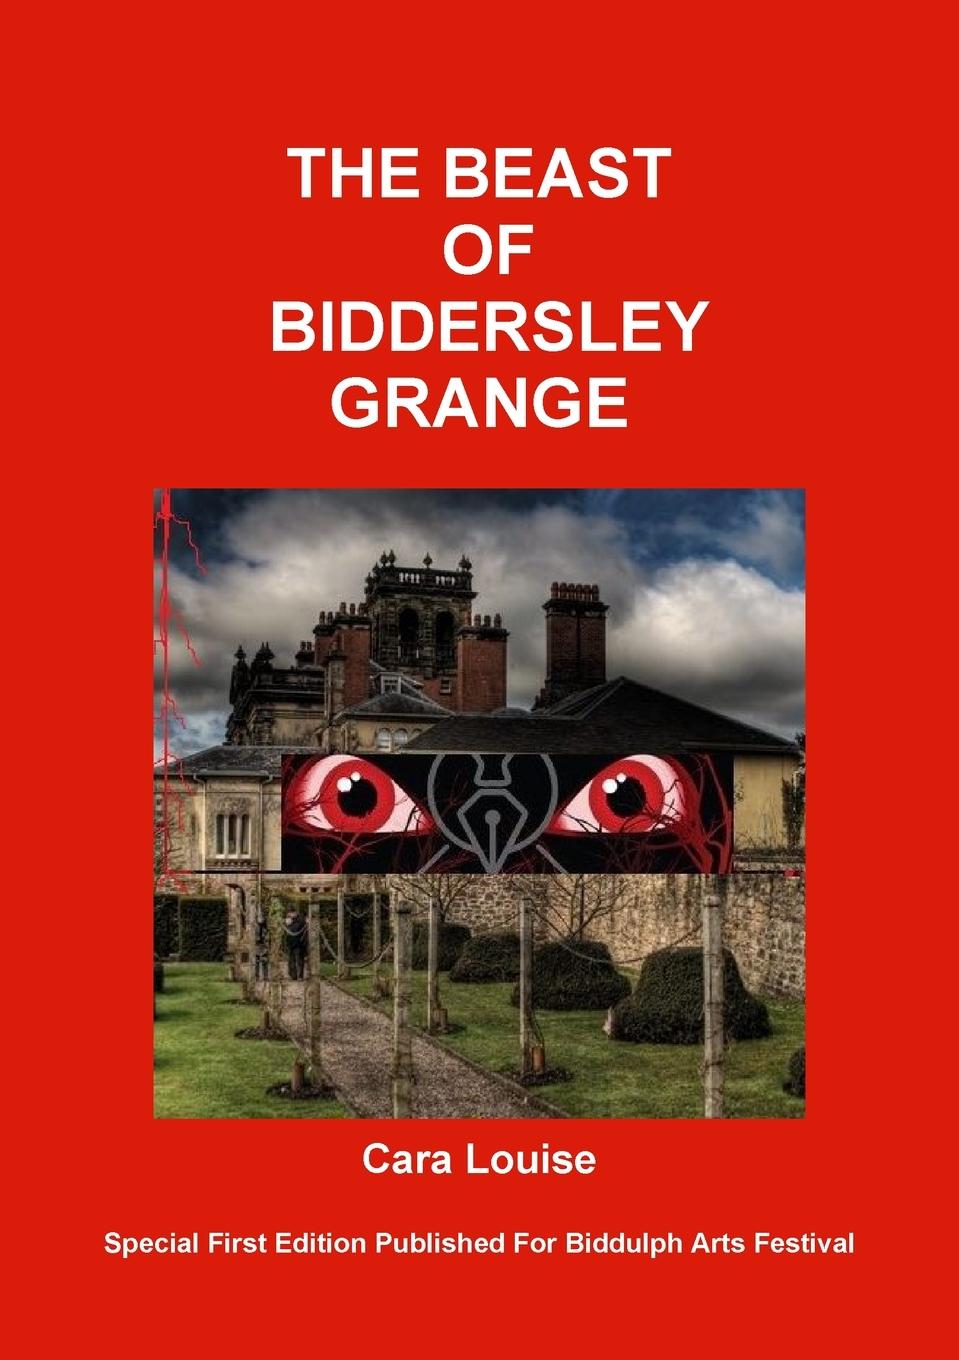 The Beast of Biddersley Grange